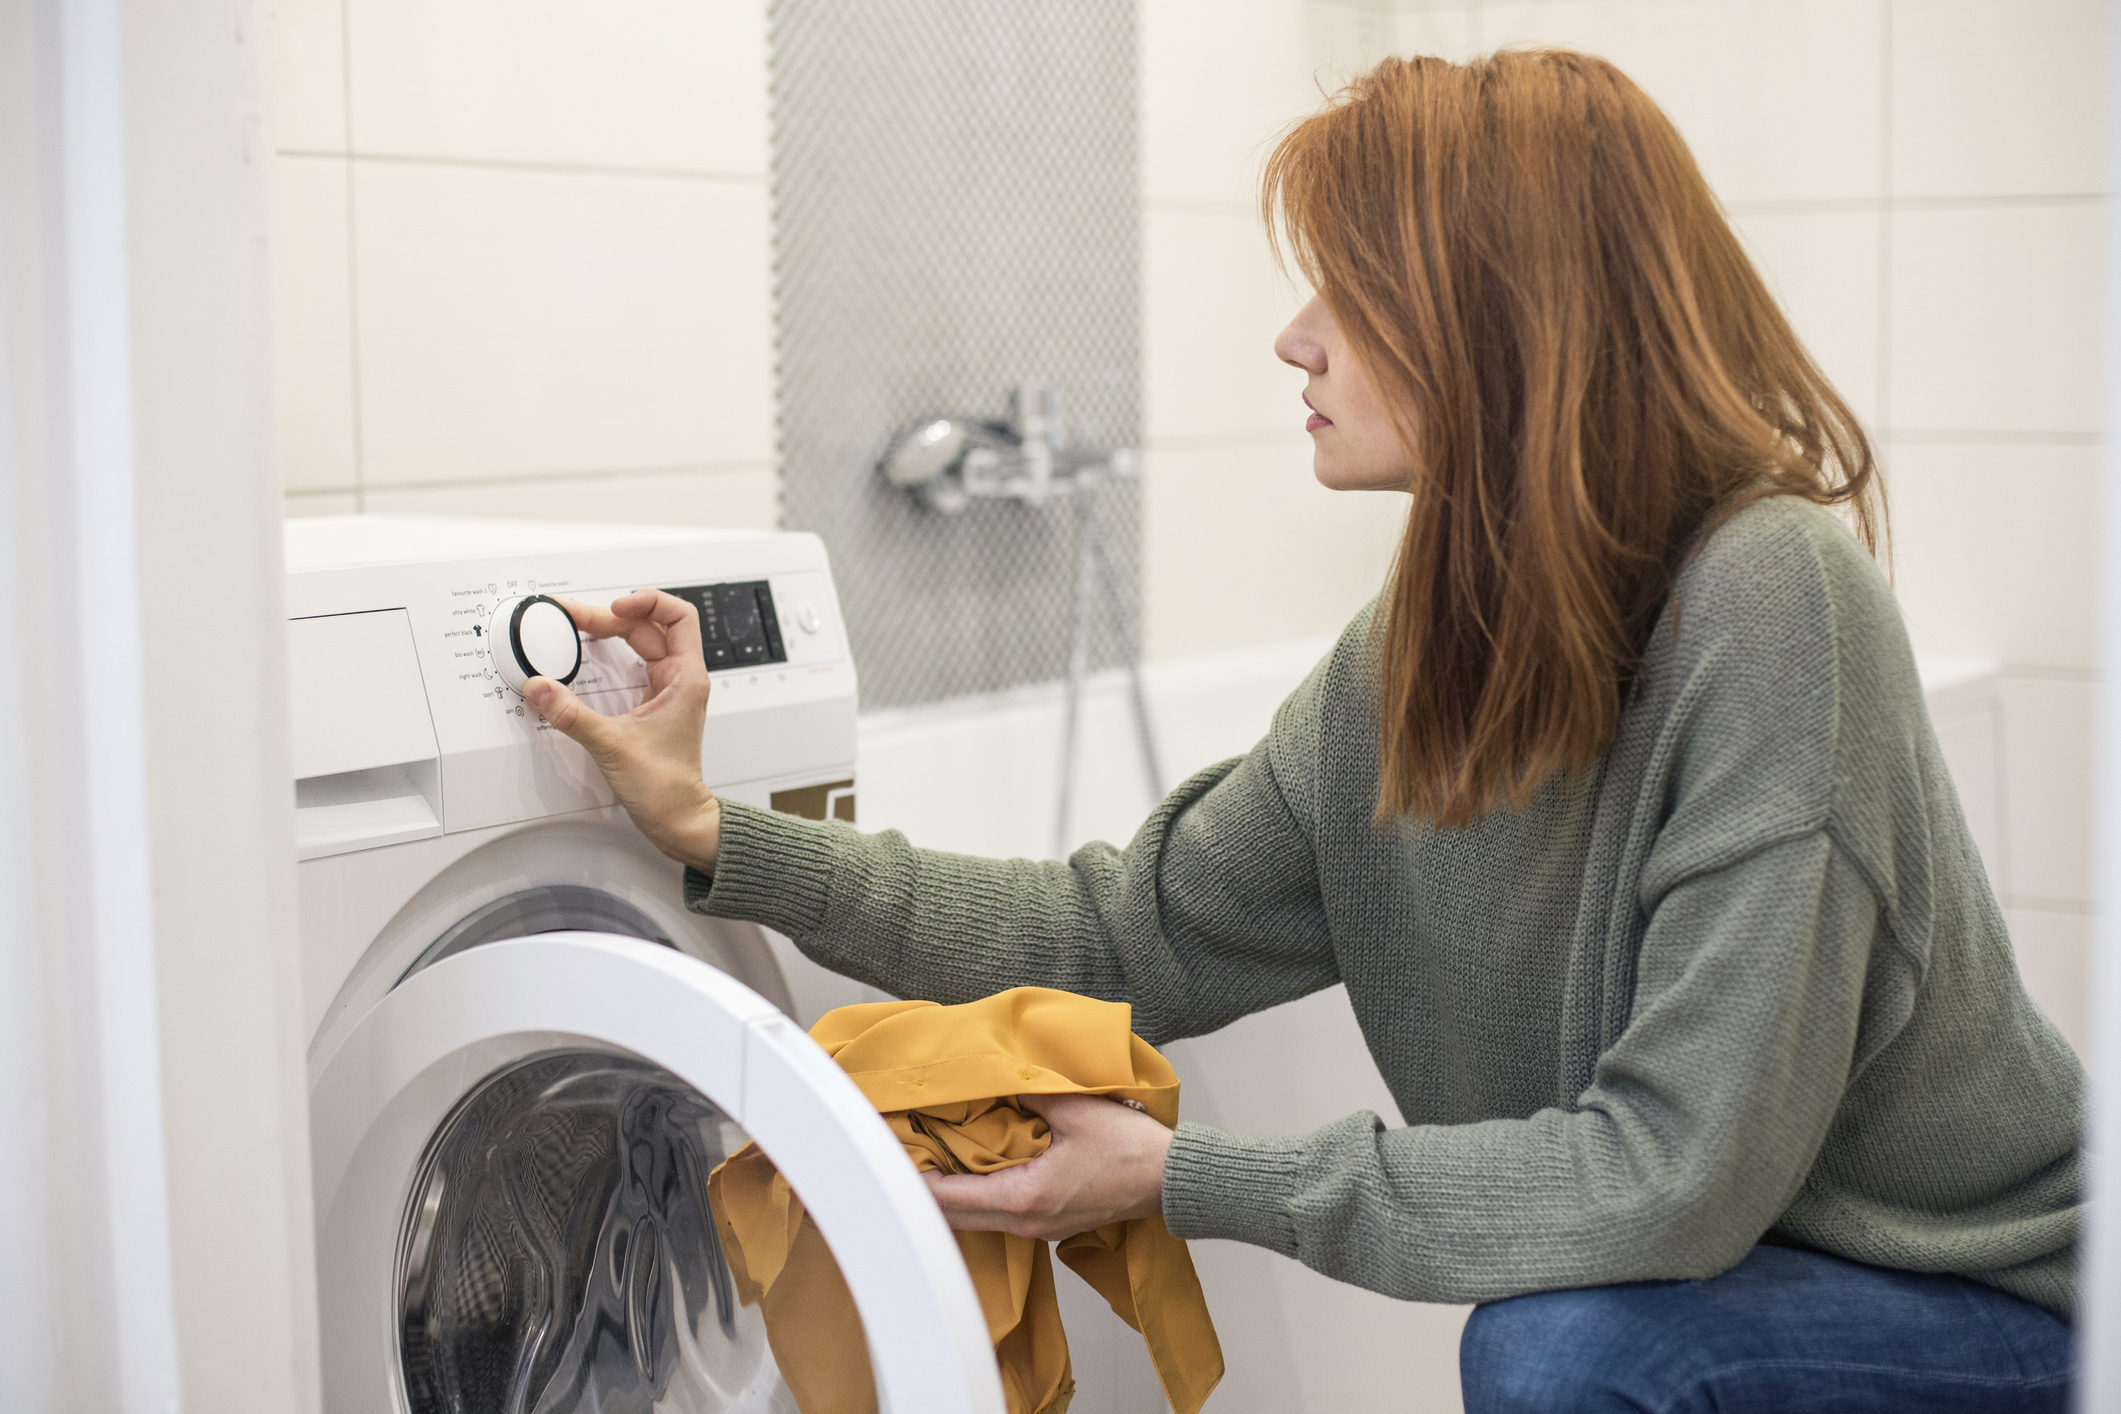 El truco secreto para calcular la dosis perfecta de detergente para lavar  la ropa